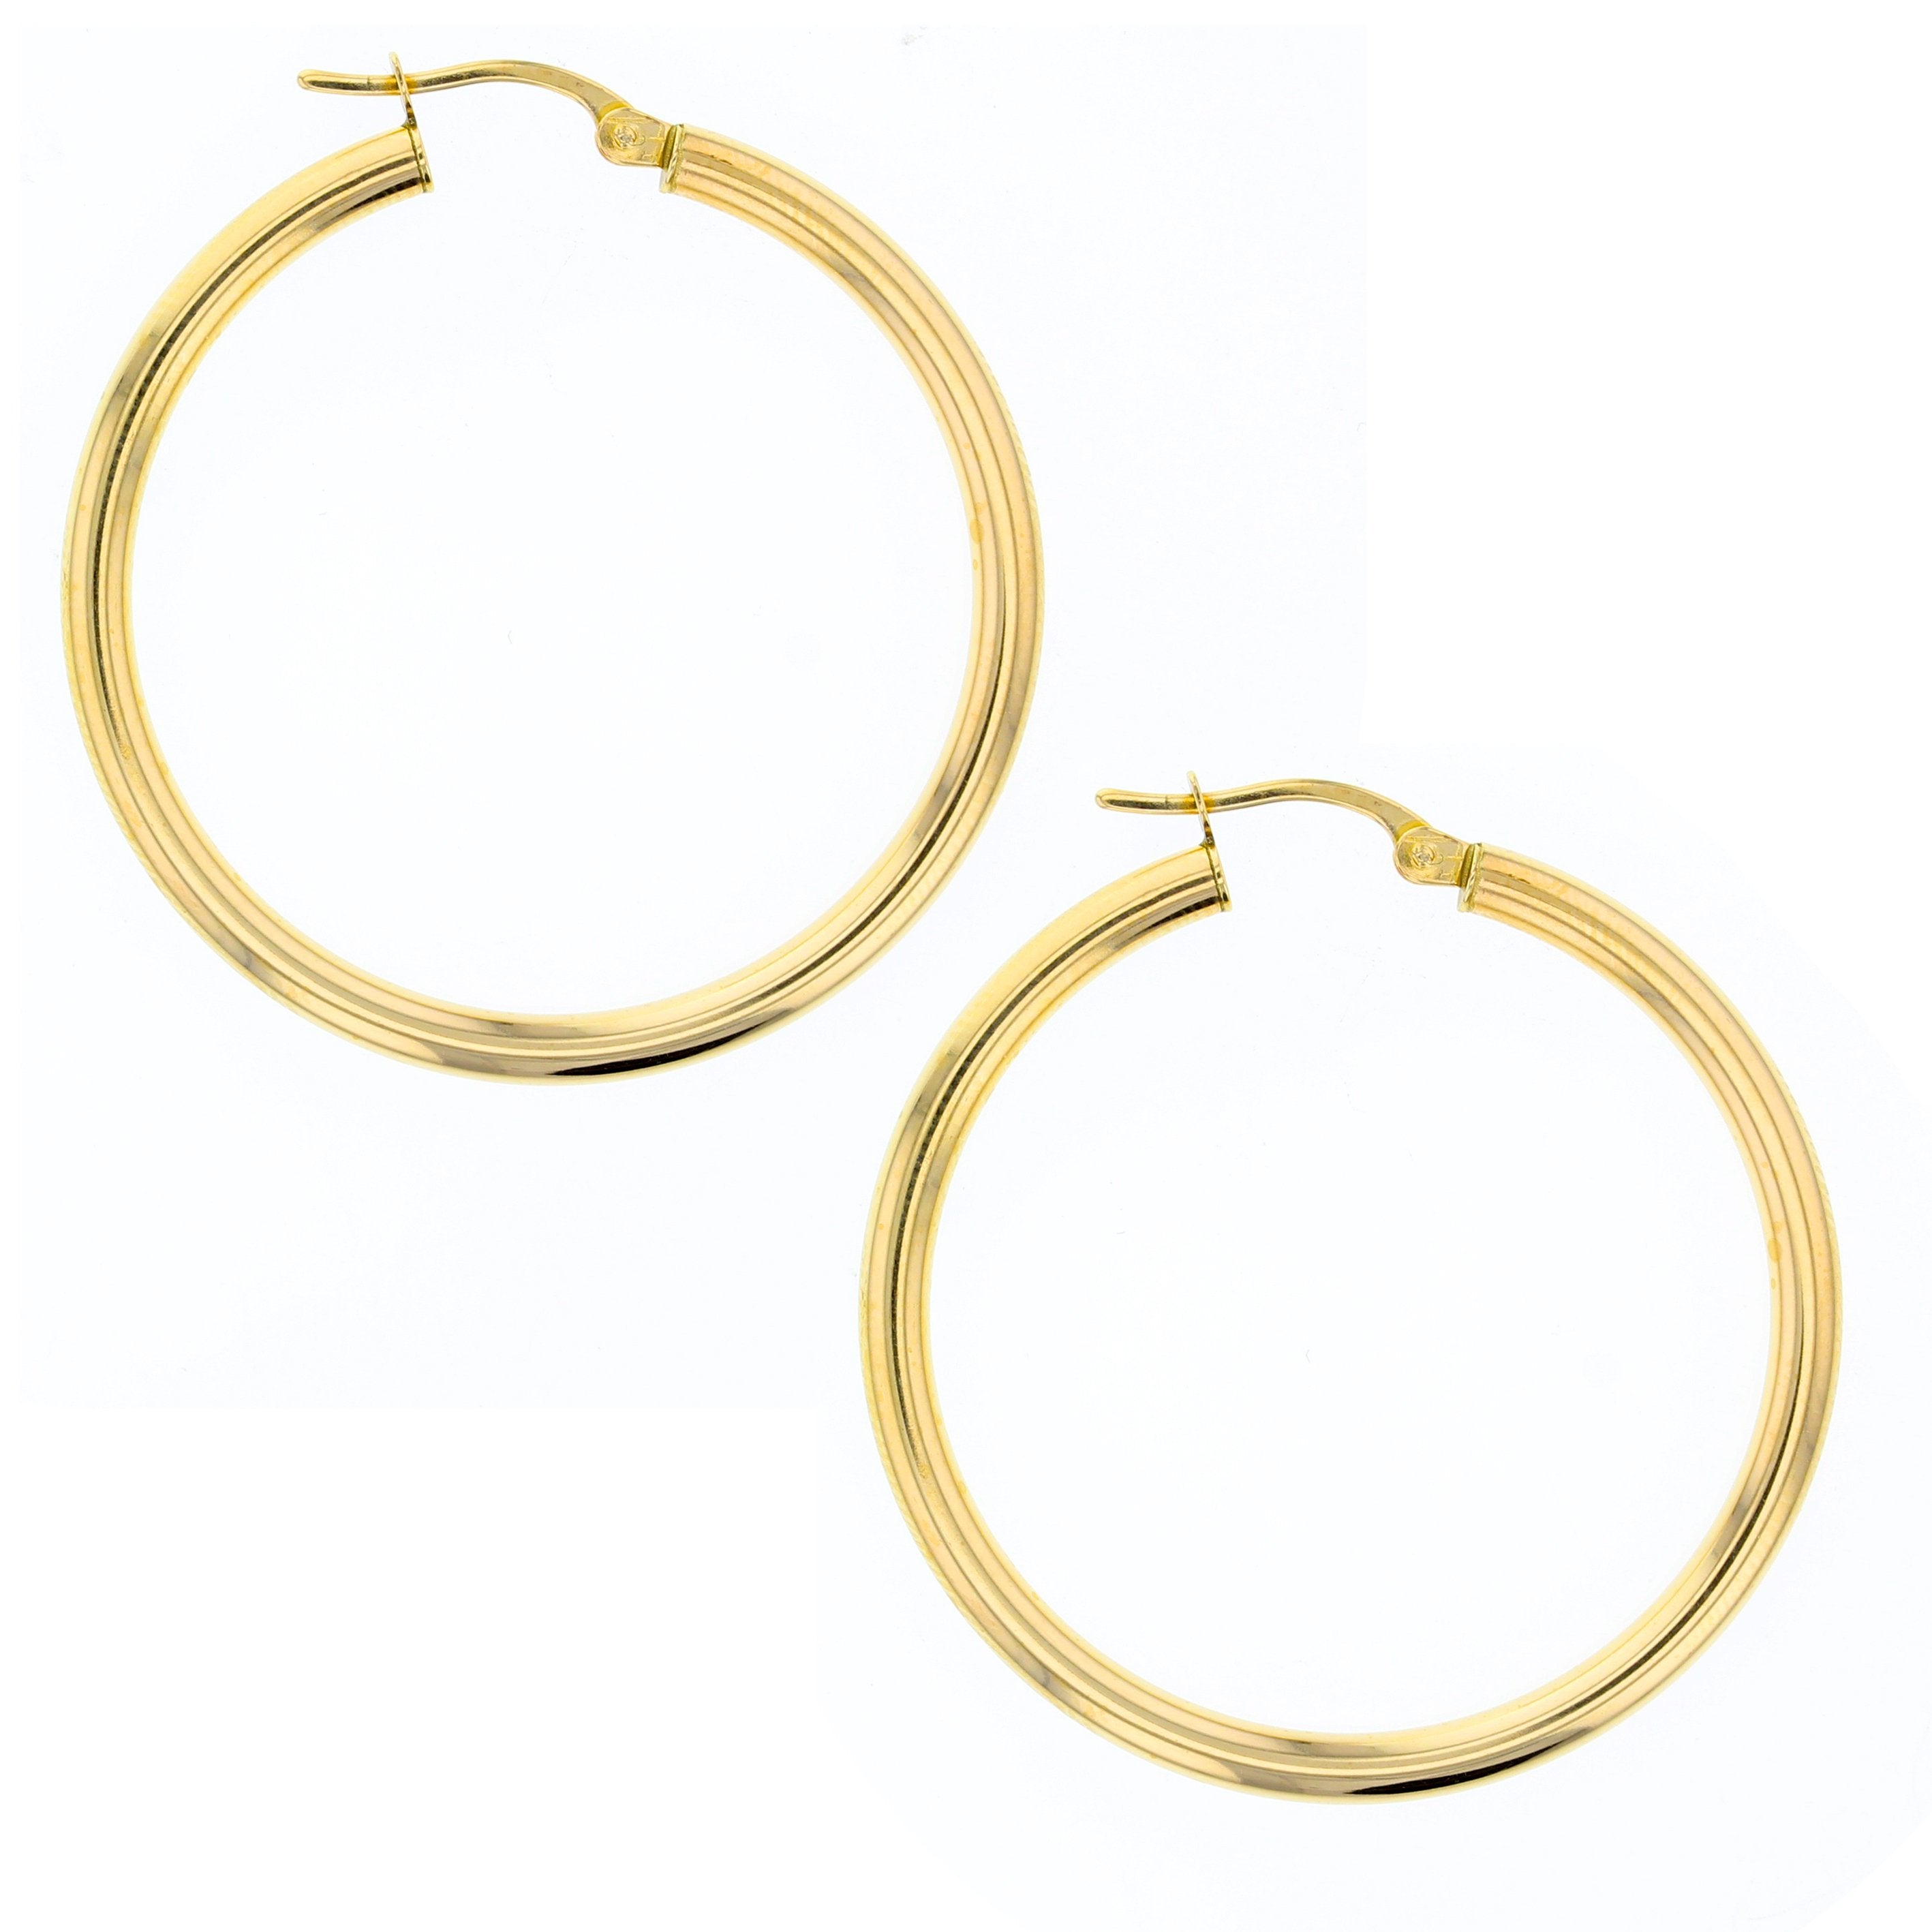 Plain 30mm Hoop Earrings in 9ct Gold